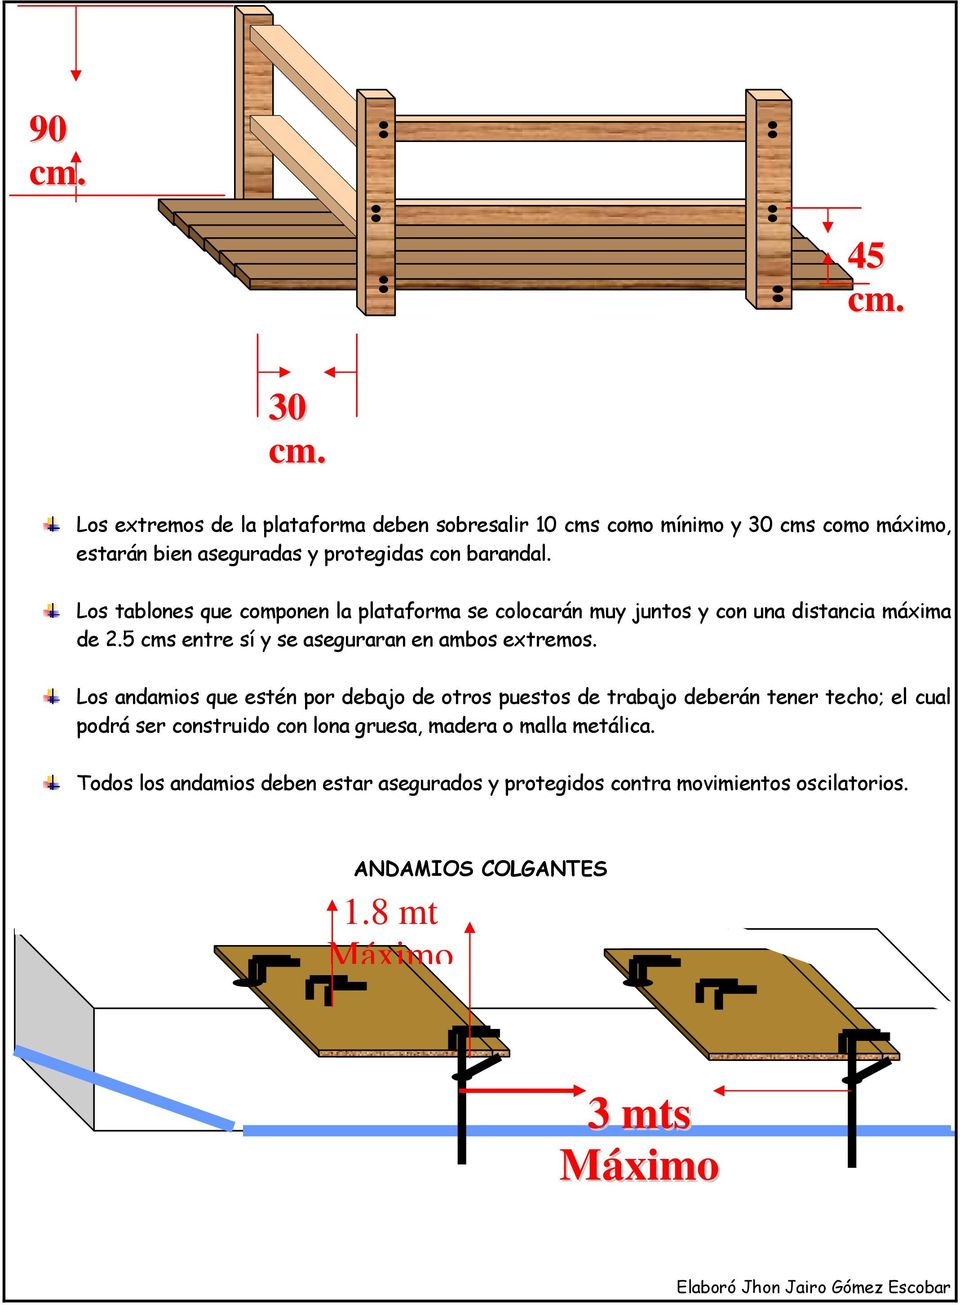 Los tablones que componen la plataforma se colocarán muy juntos y con una distancia máxima de 2.5 cms entre sí y se aseguraran en ambos extremos.